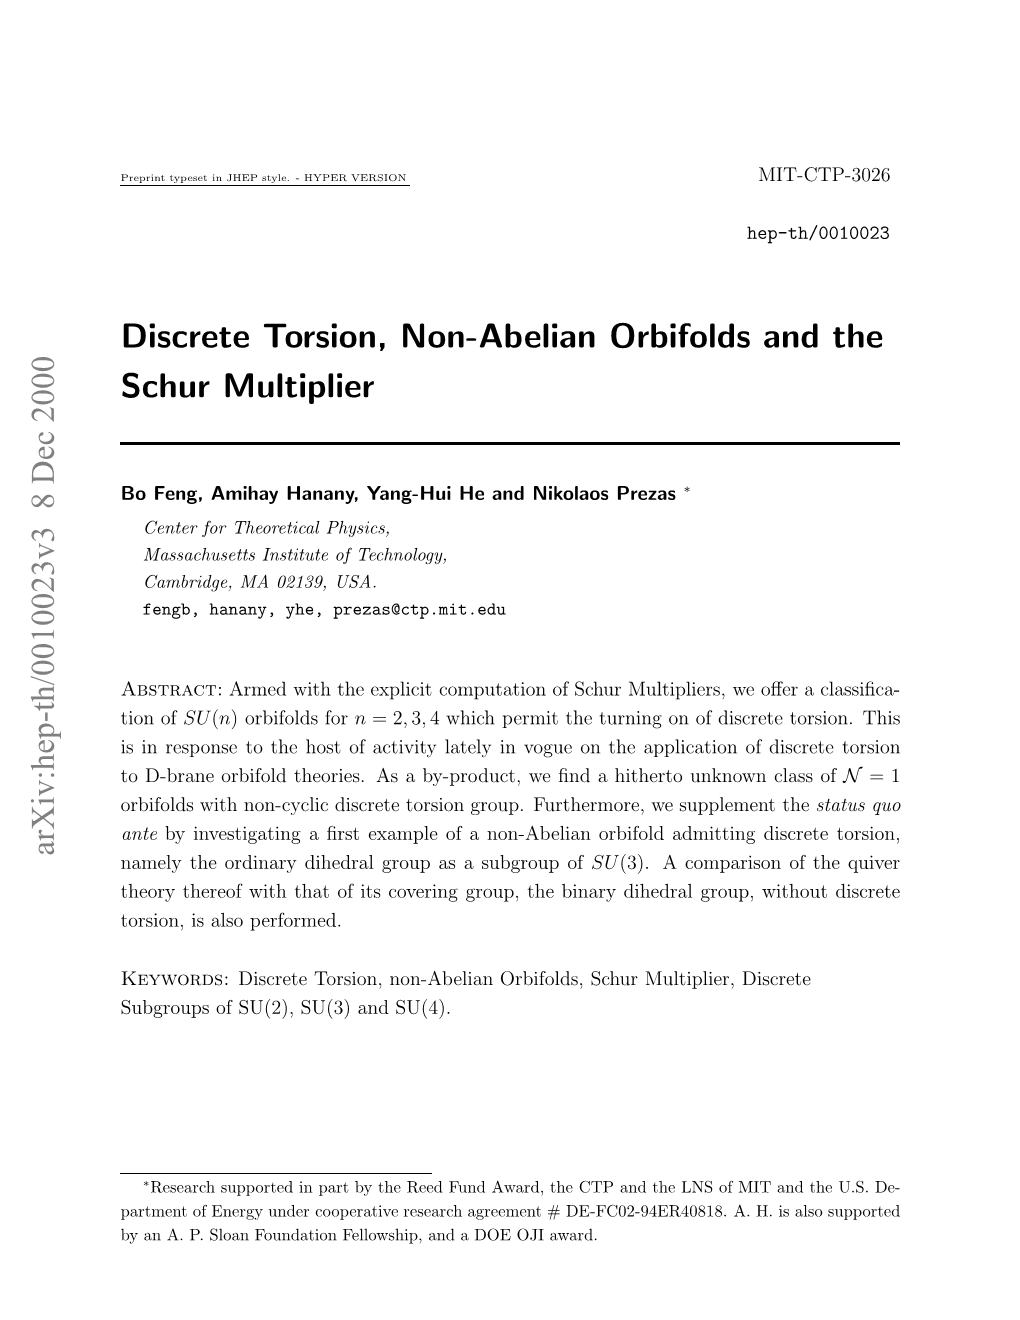 Discrete Torsion, Non-Abelian Orbifolds and the Schur Multiplier